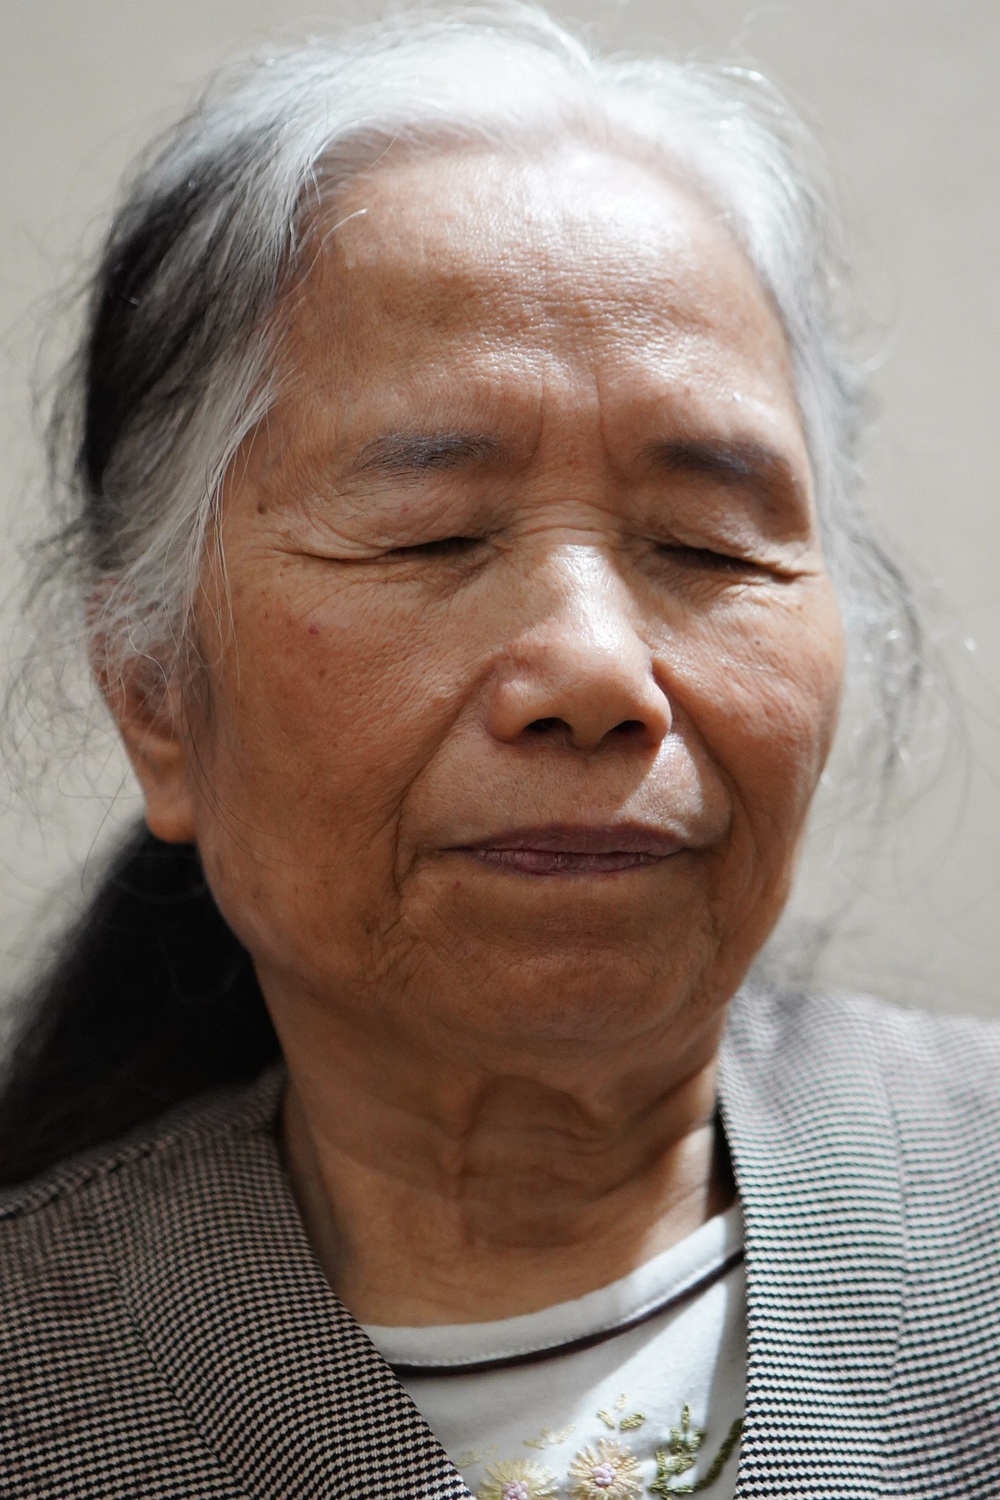 Vợ chồng mù bán chổi đót ở Hà Nội: Câu chuyện mất đi ánh sáng và mối tình bền chặt 30 năm - Ảnh 3.